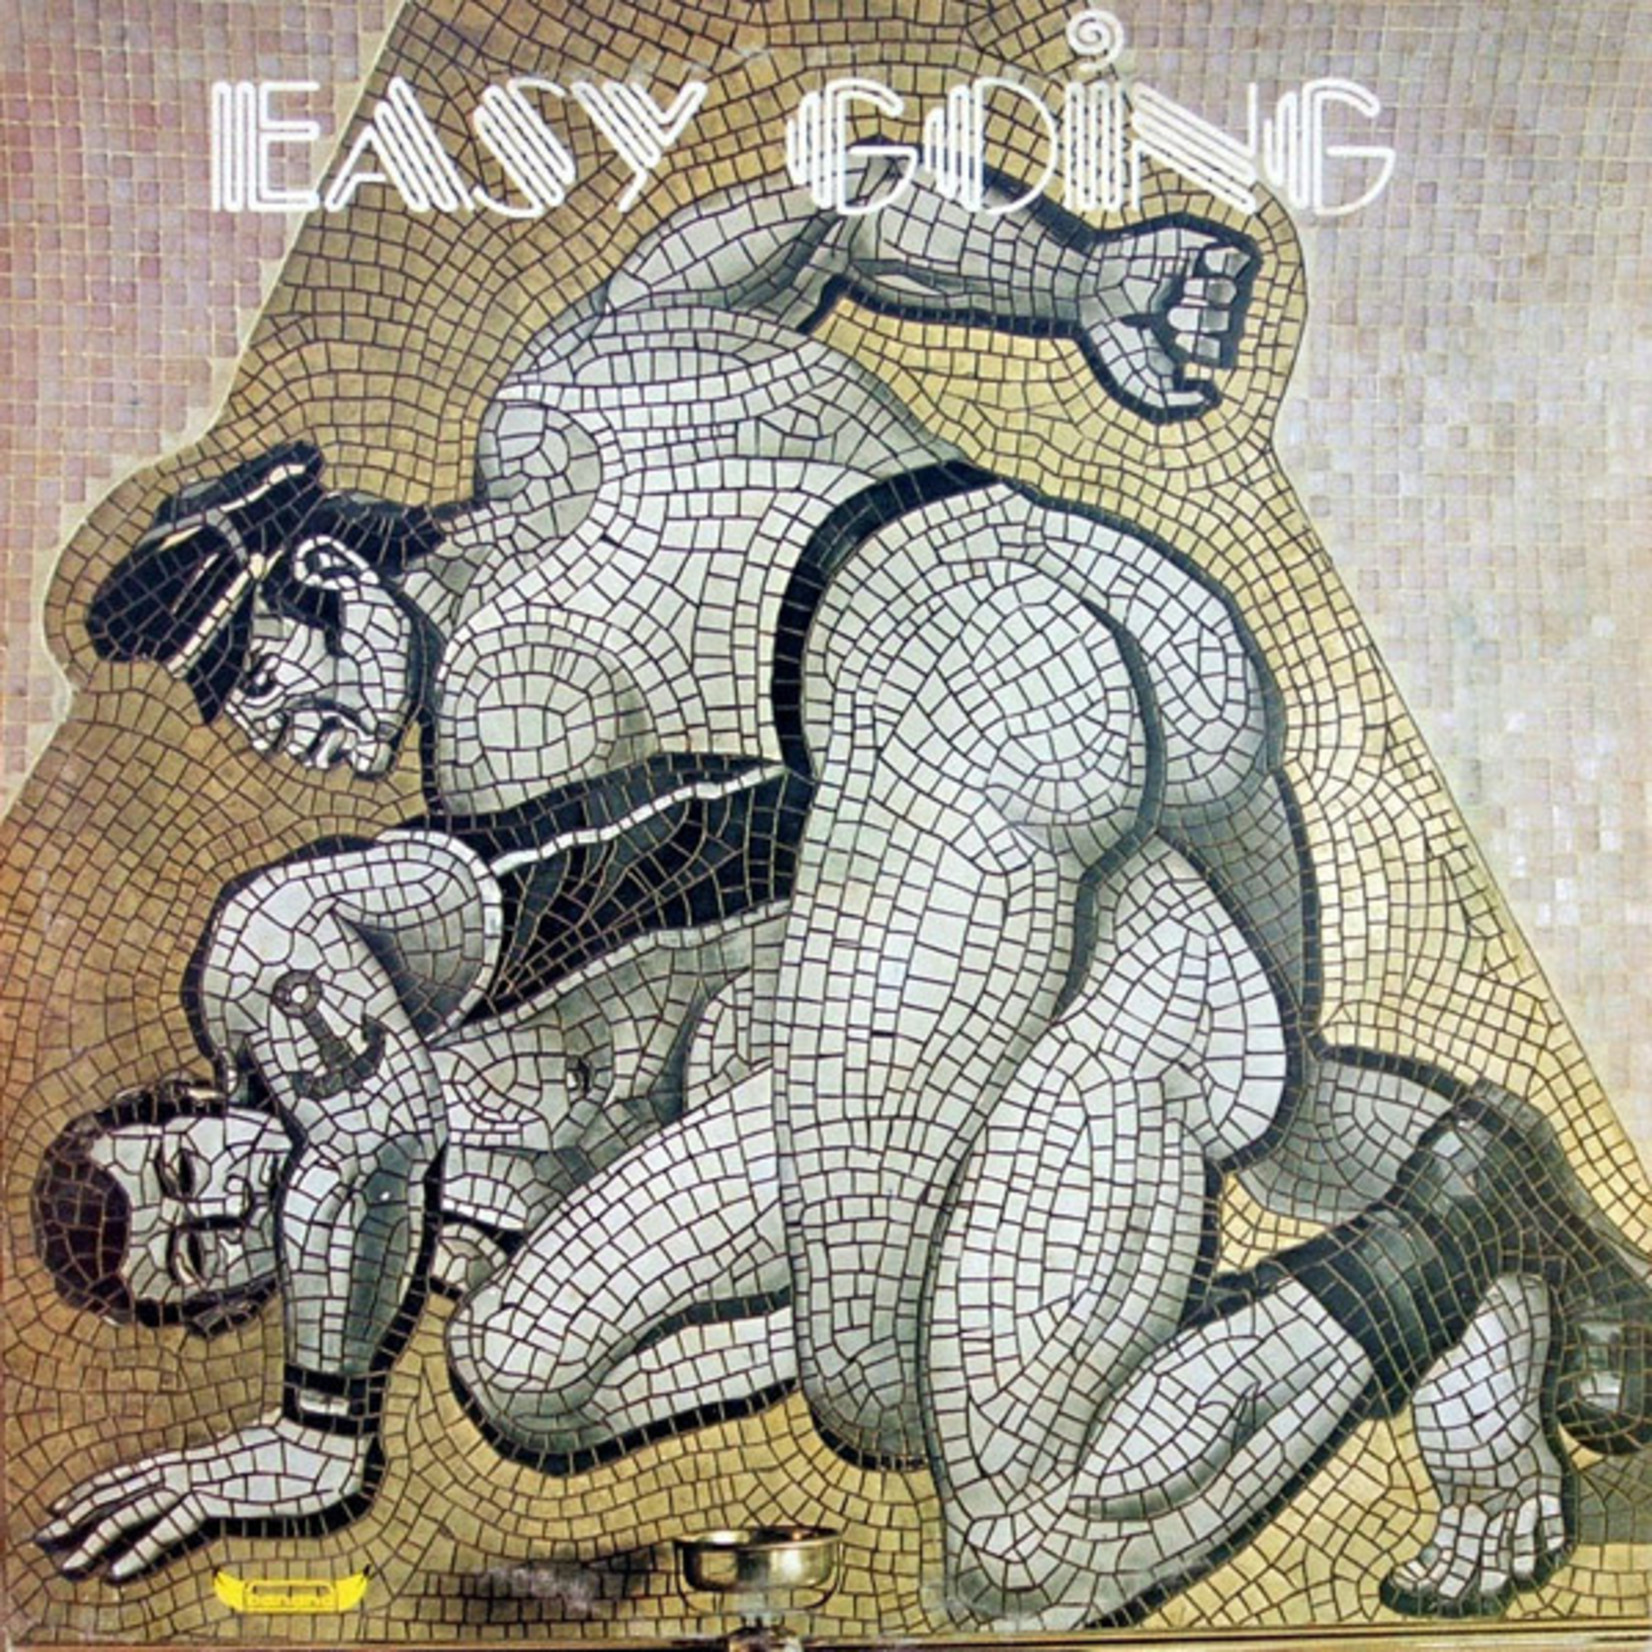 EASY GOING - EASY GOING - 12”EP (SIMMONETI GOBLIN) 1978